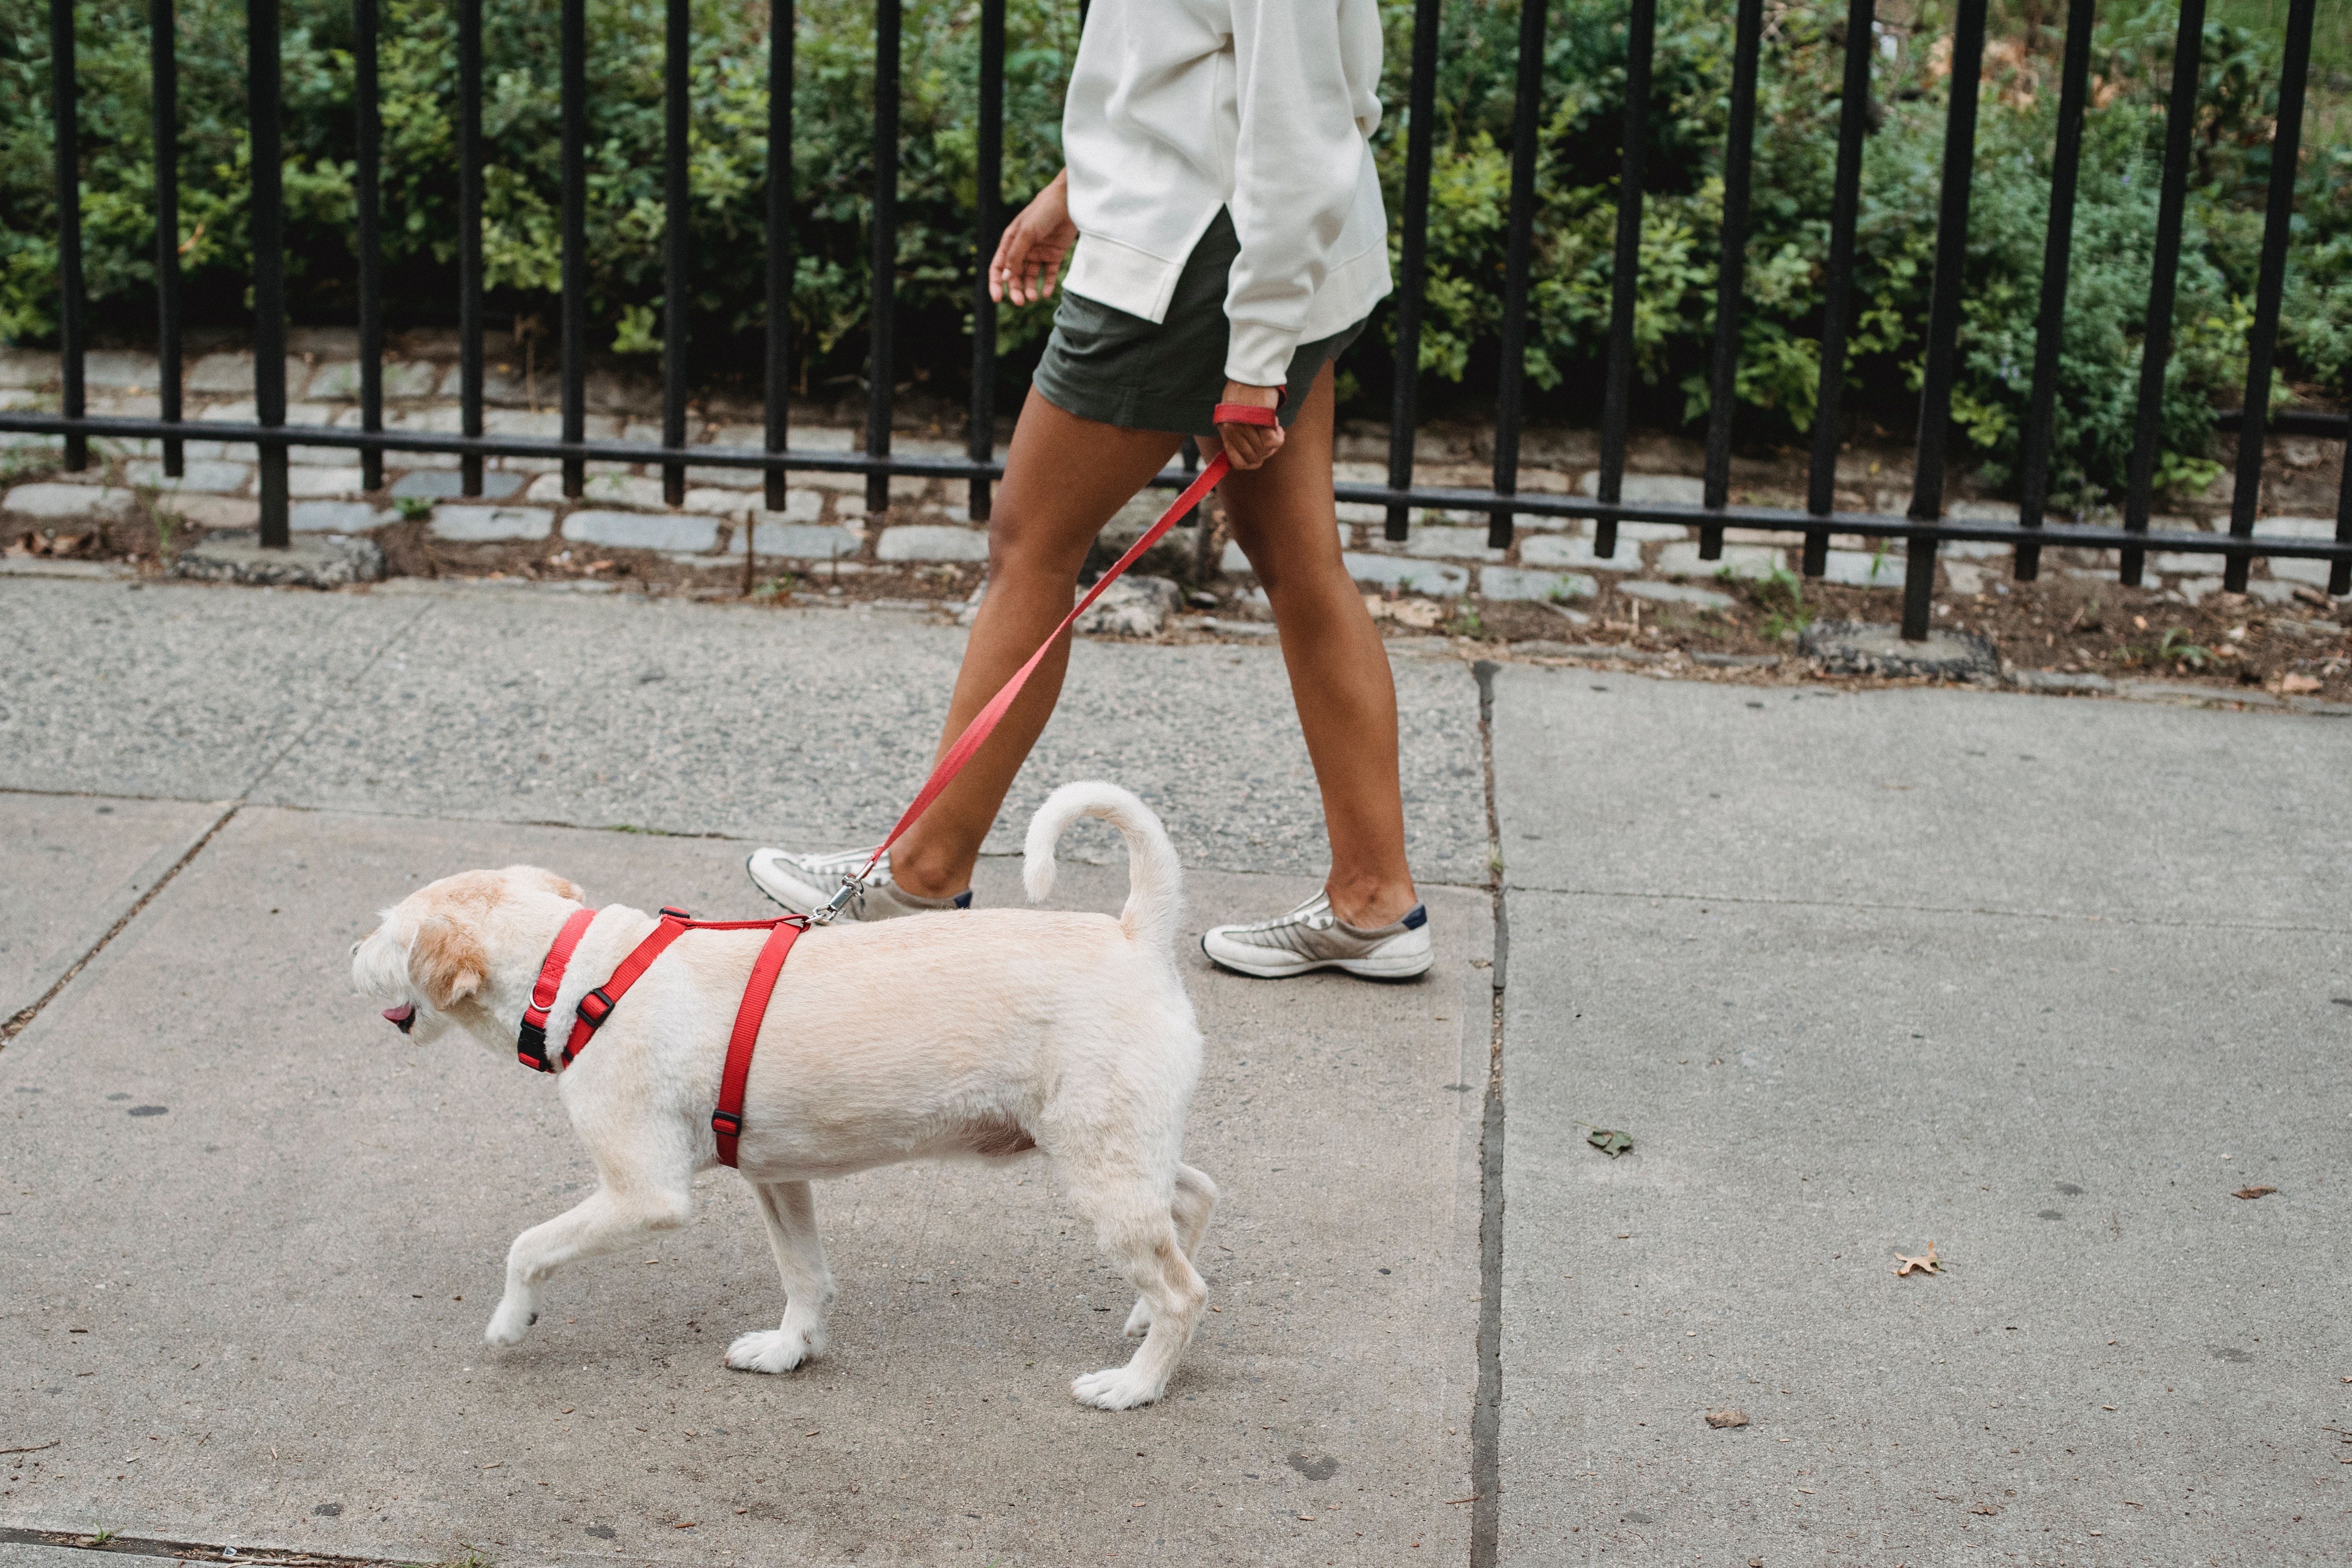 HUNDELUFTING: Å gå tur med hunden for noen, kanskje en nabo, et familiemedlem eller andre bekjente, kan være en fin måte å tjene litt ekstra penger på. Foto: Pexels/Samson Katt